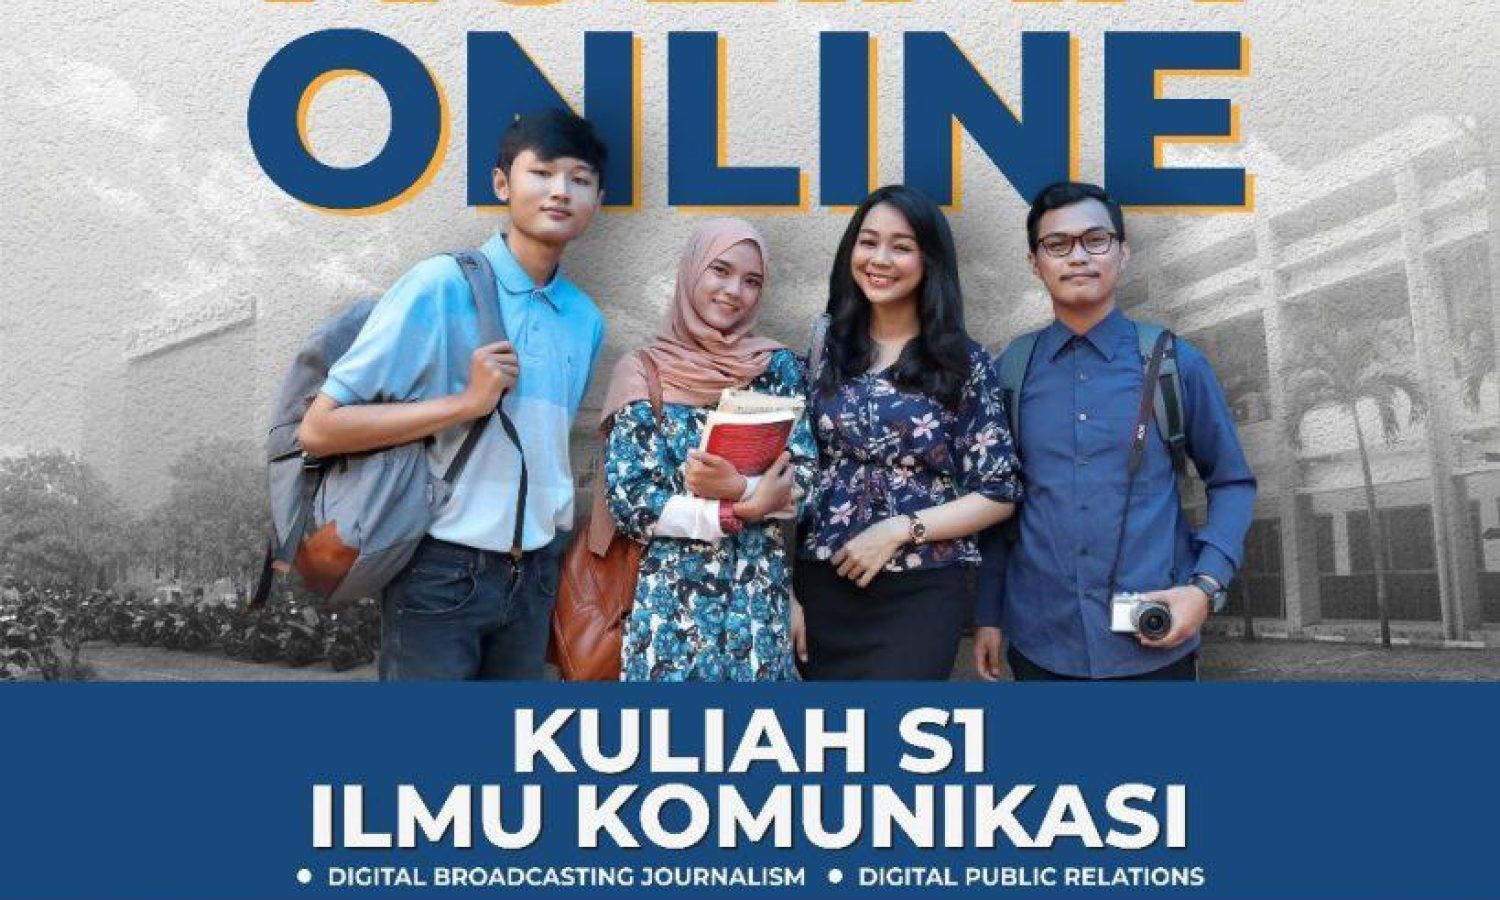 Kuliah Online STIKOSA-AWS